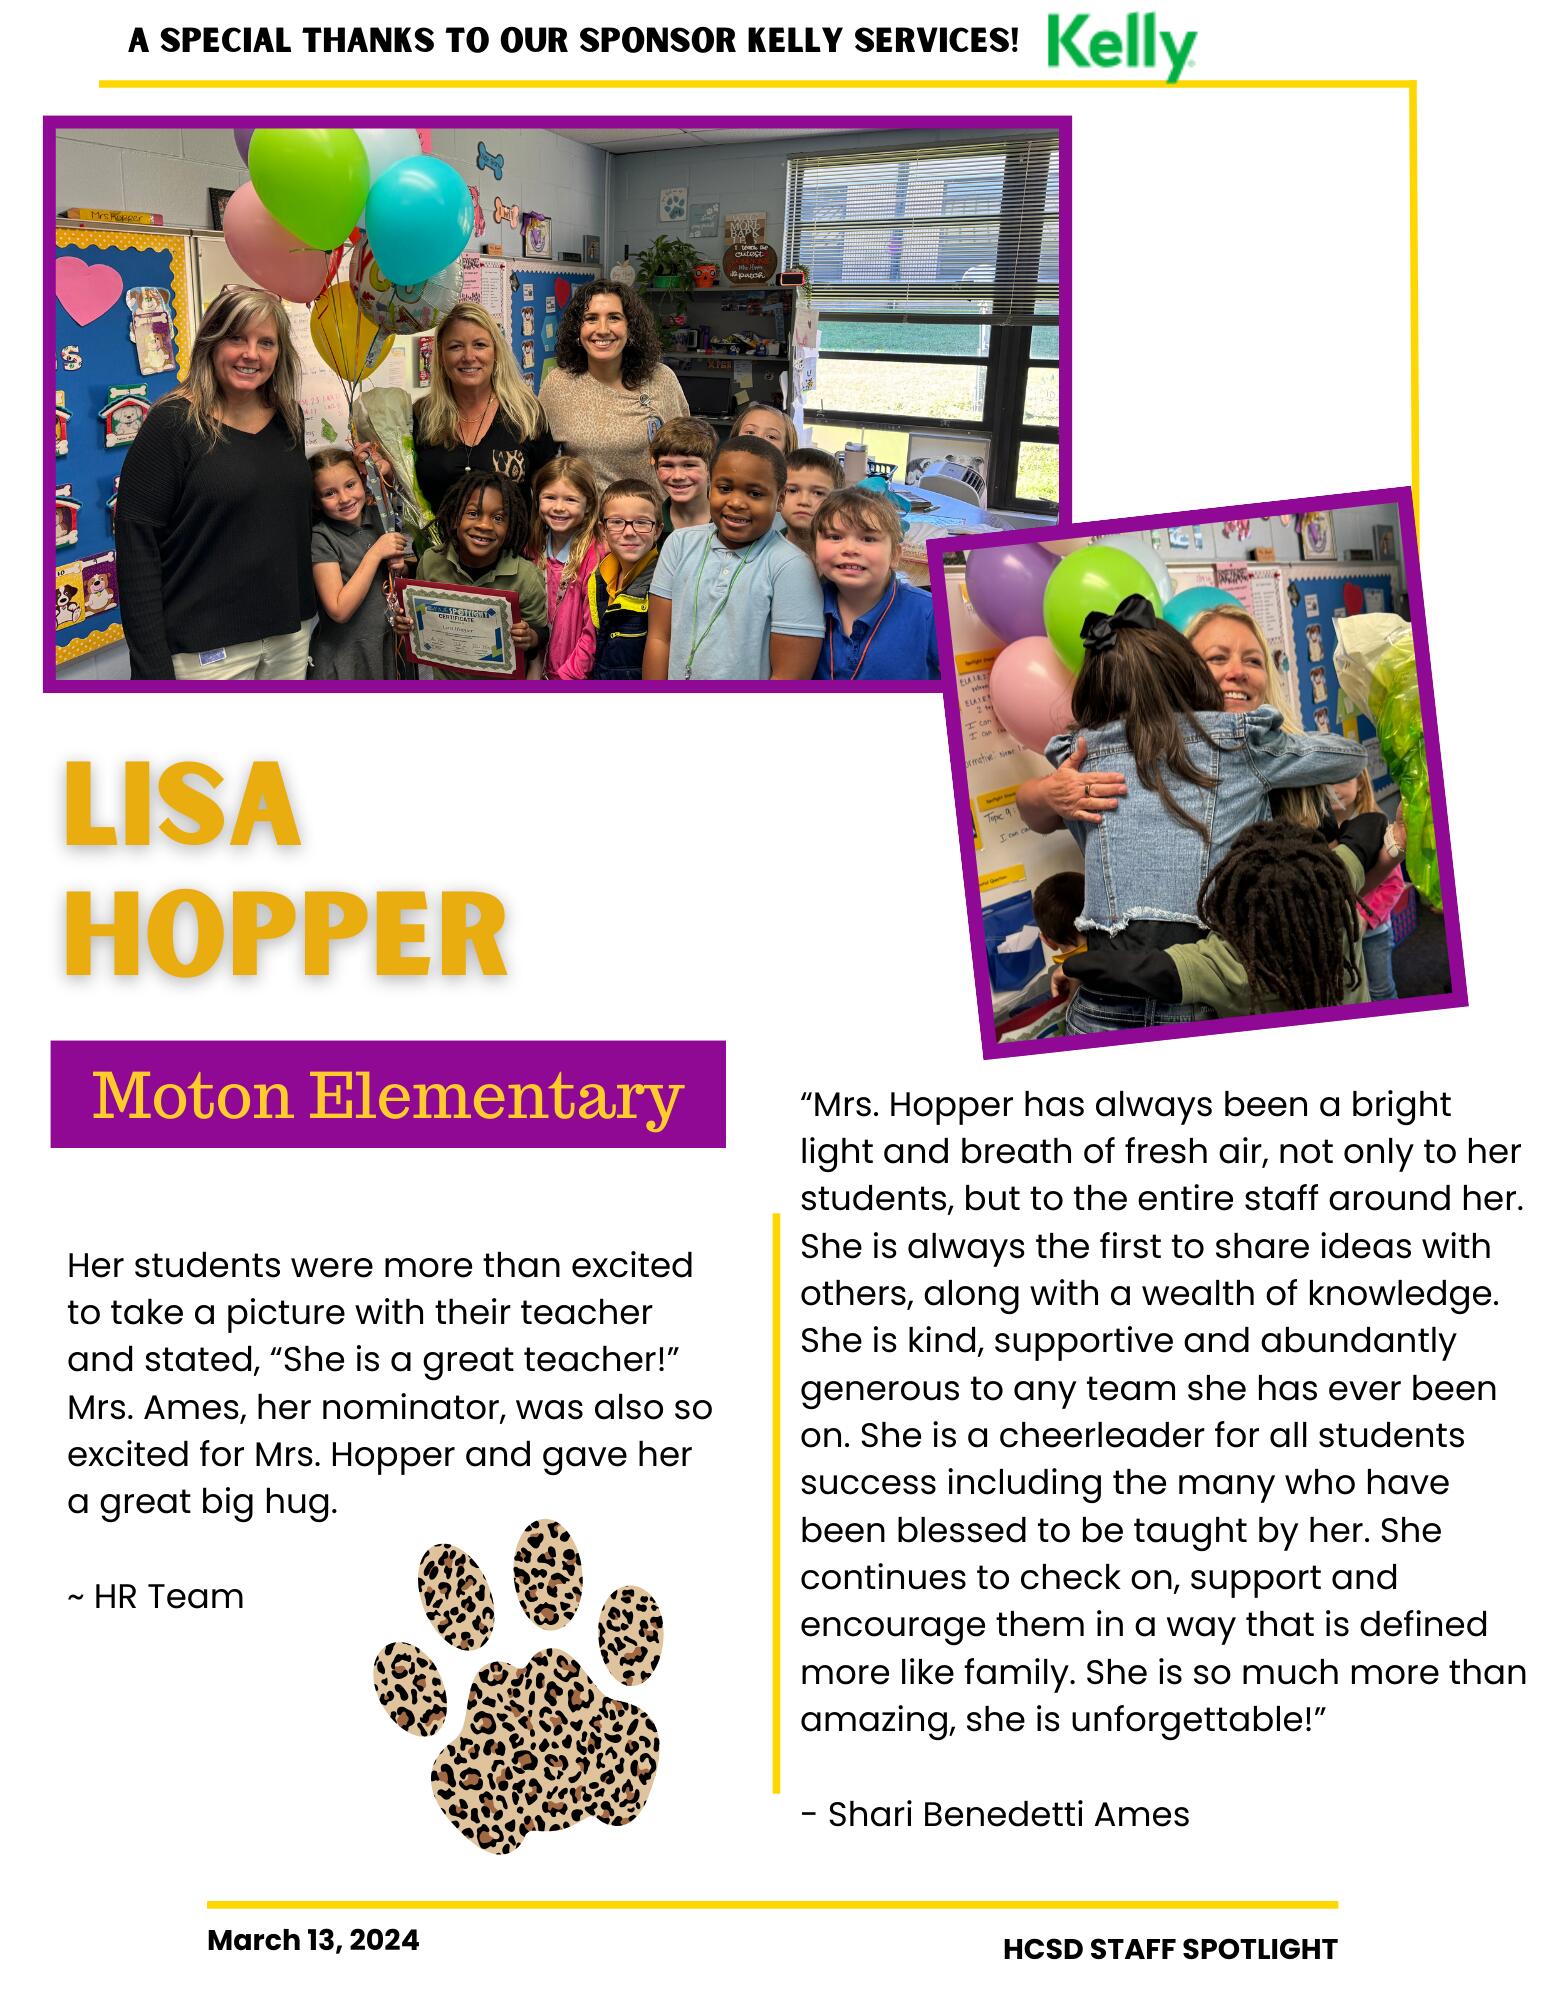 Staff Spotlight on Lisa Hopper